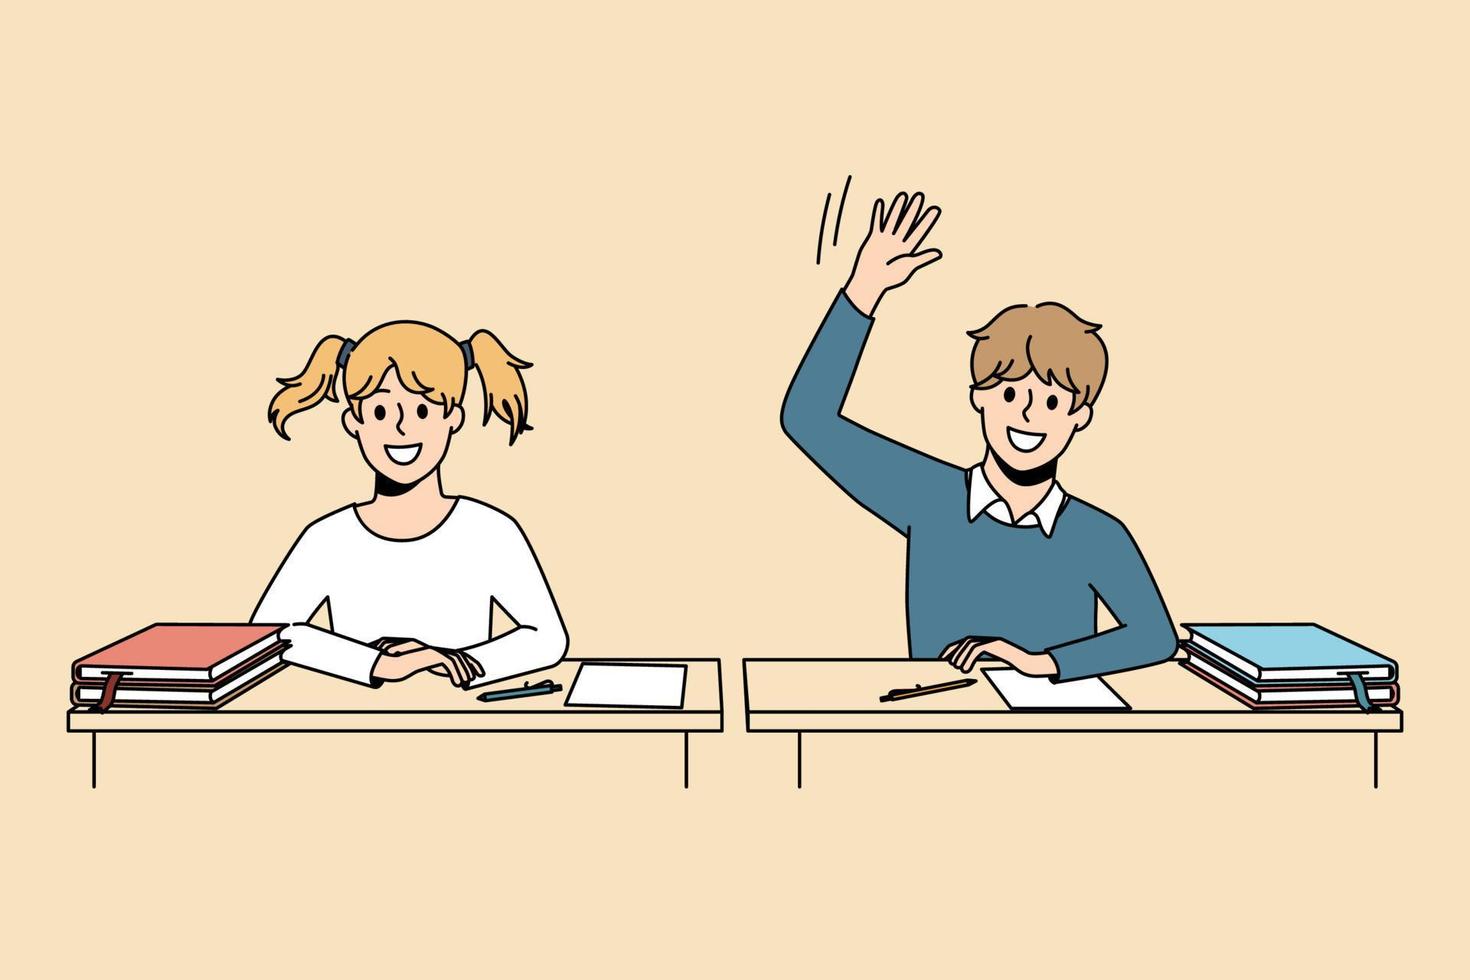 processus éducatif et concept d'apprentissage. élèves souriants garçon et fille assis à la leçon et levant la main prêts à répondre ayant des connaissances illustration vectorielle vecteur